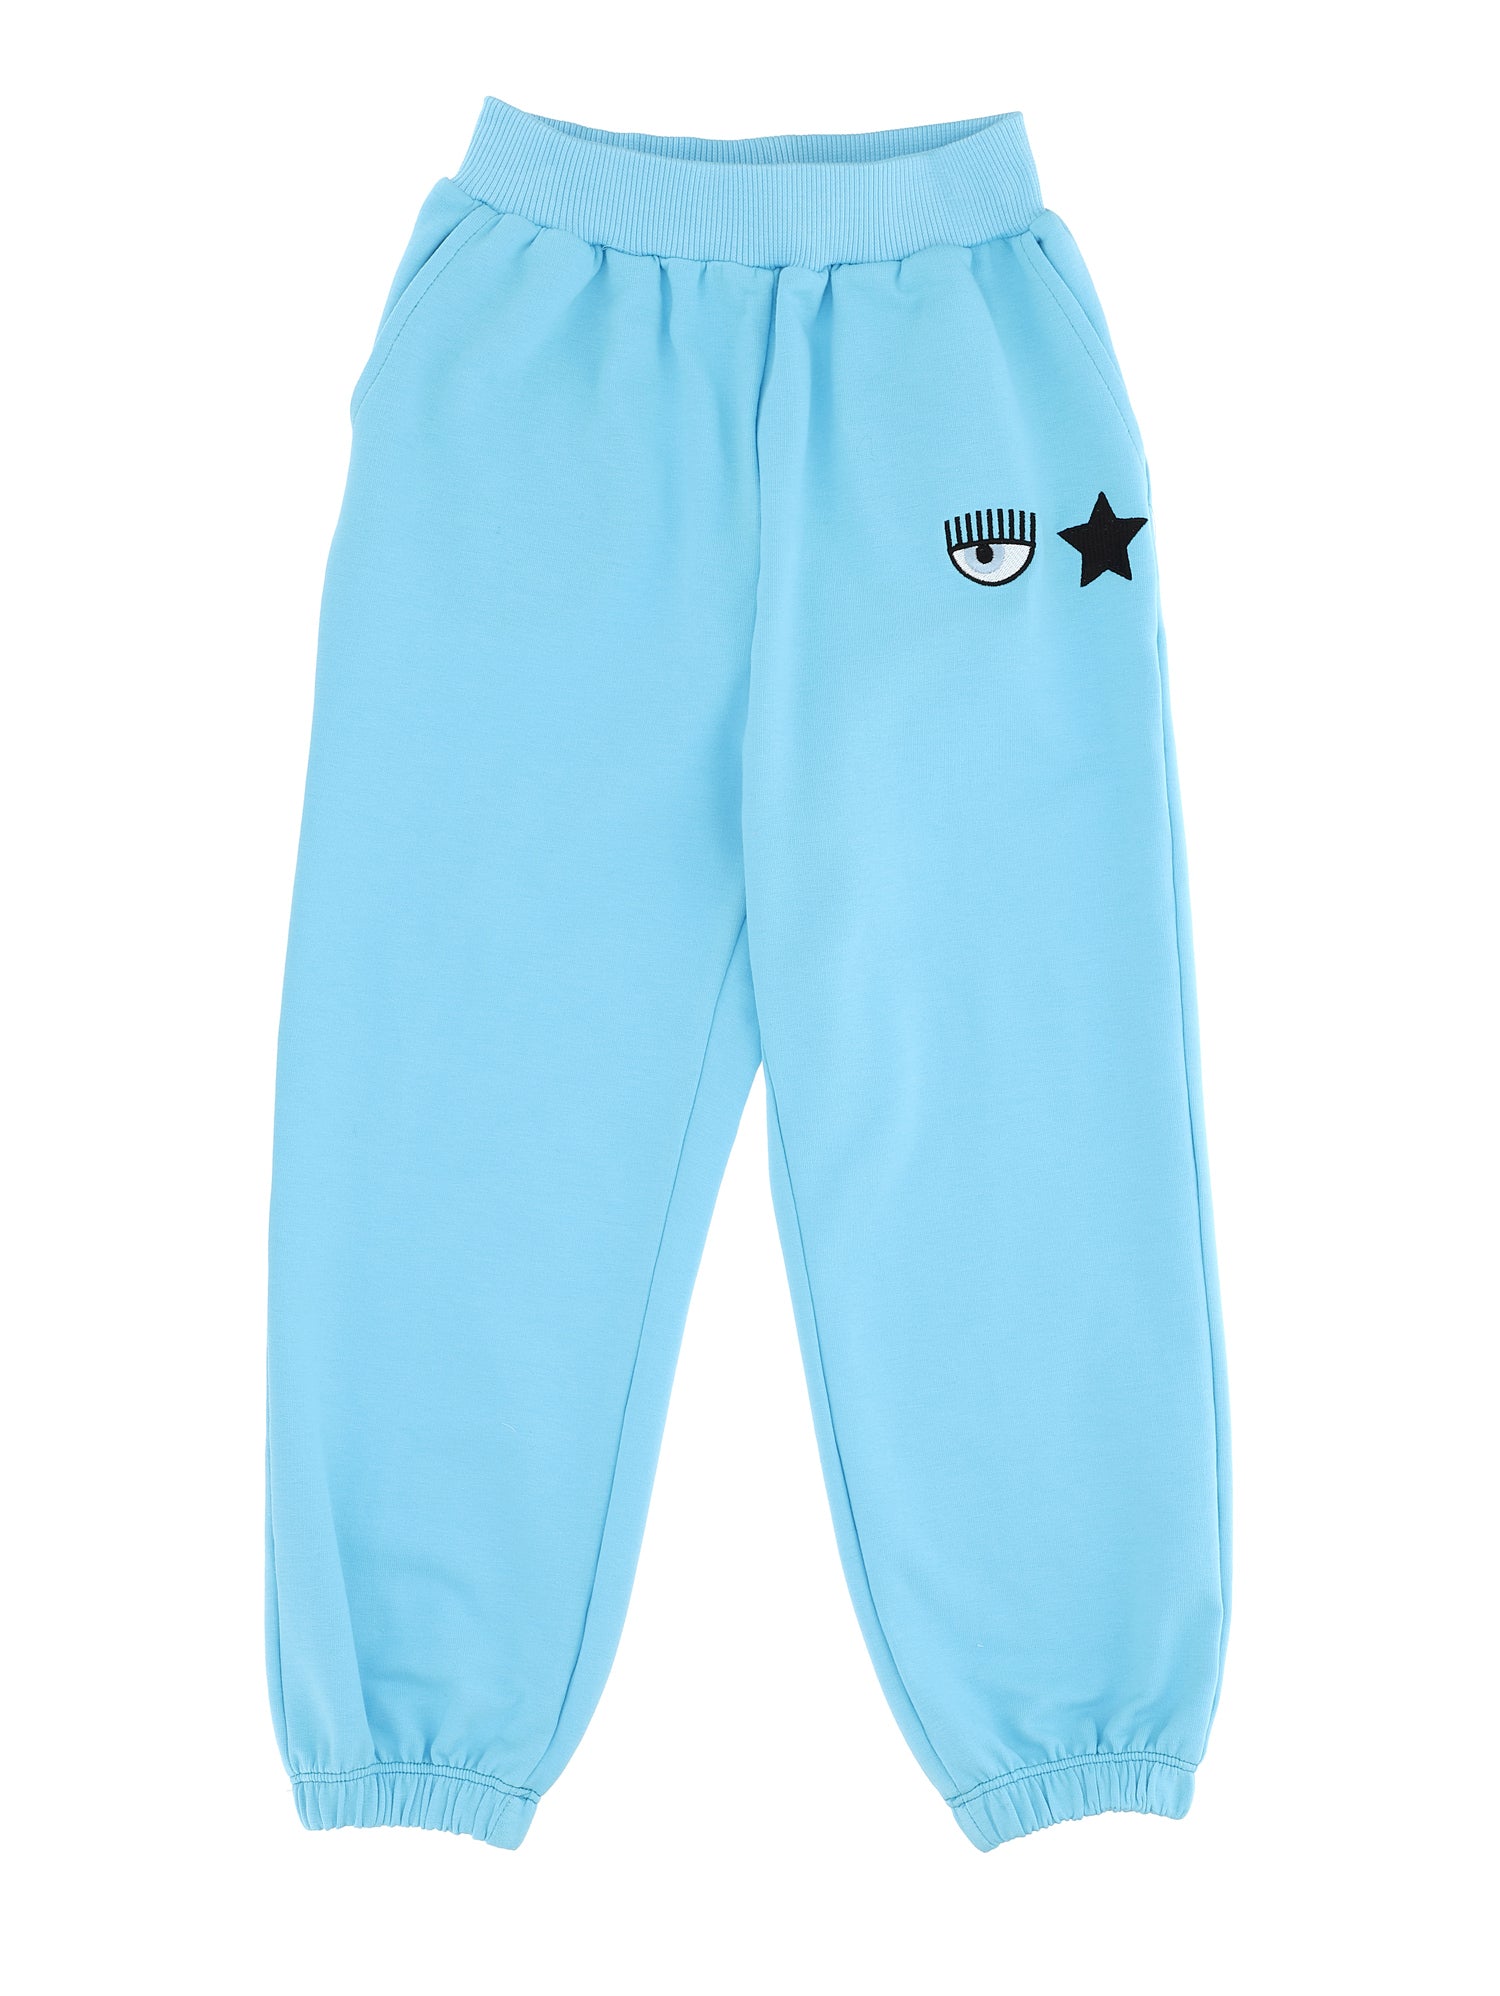 Pantalone azzurro con dettagli logo per bambina